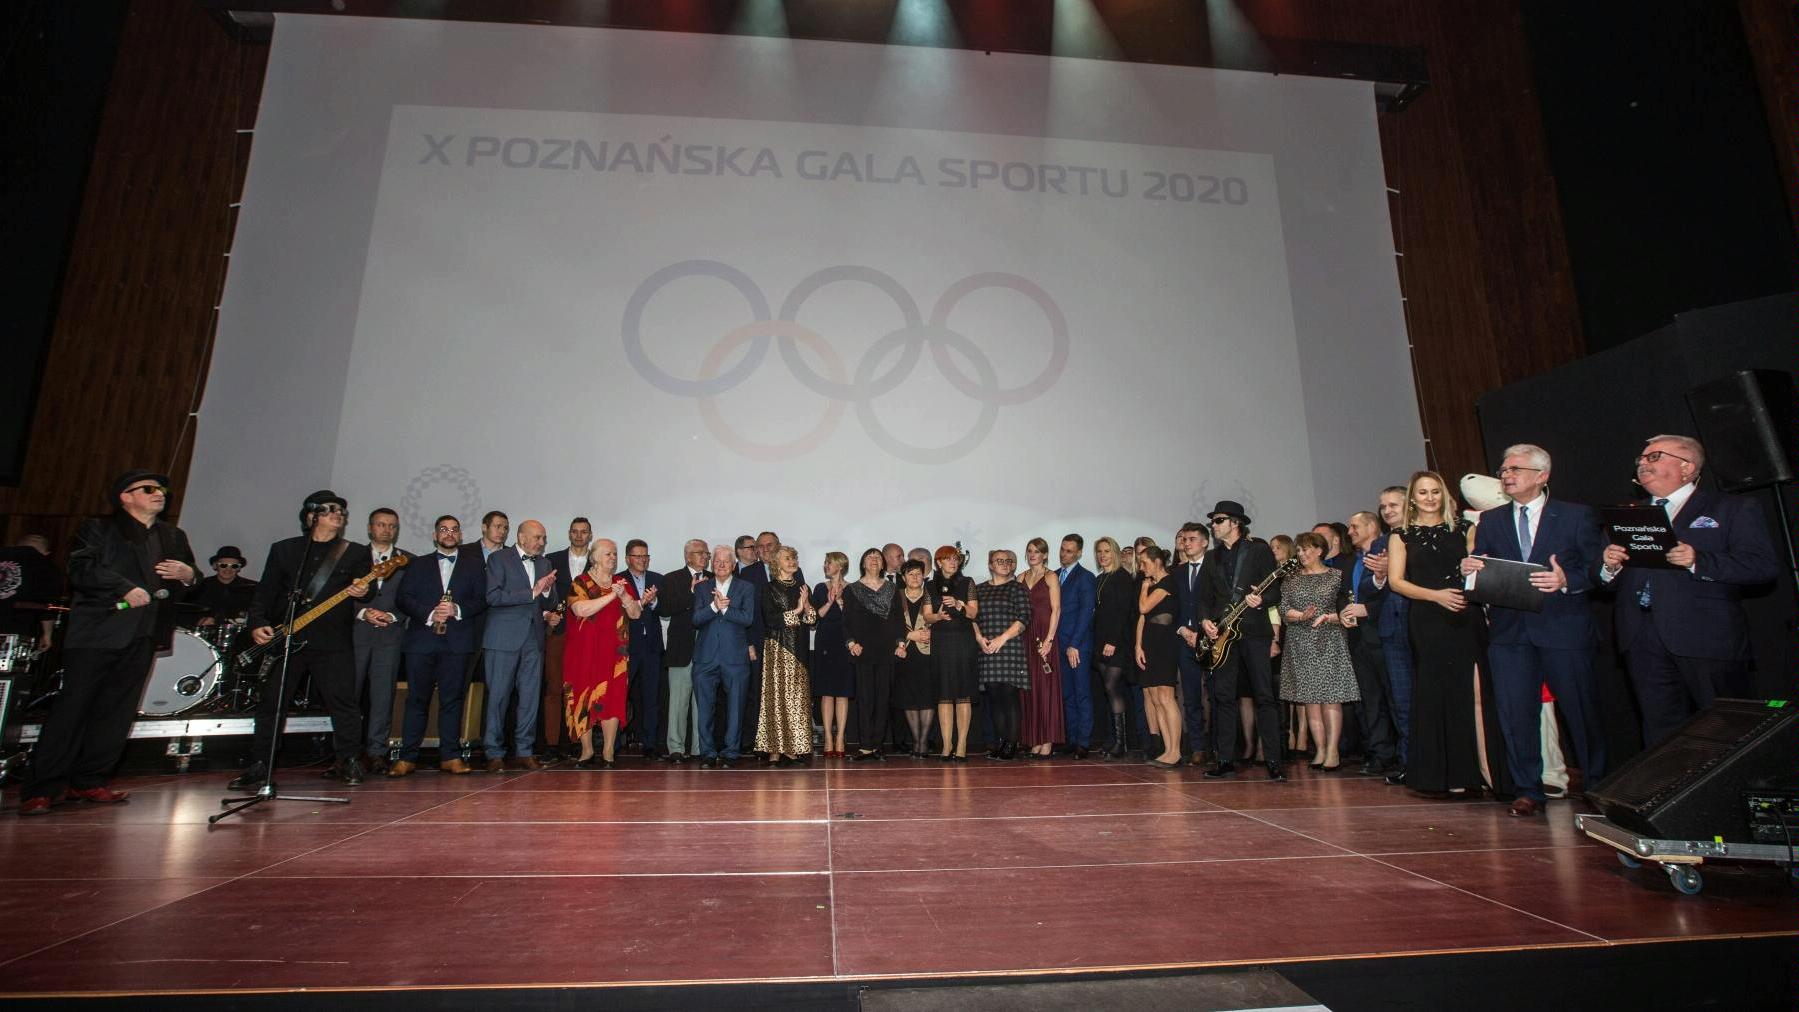 poznanska gala sportu 2020 fot t szwajkowskipic11016141825251892with ratio16 9